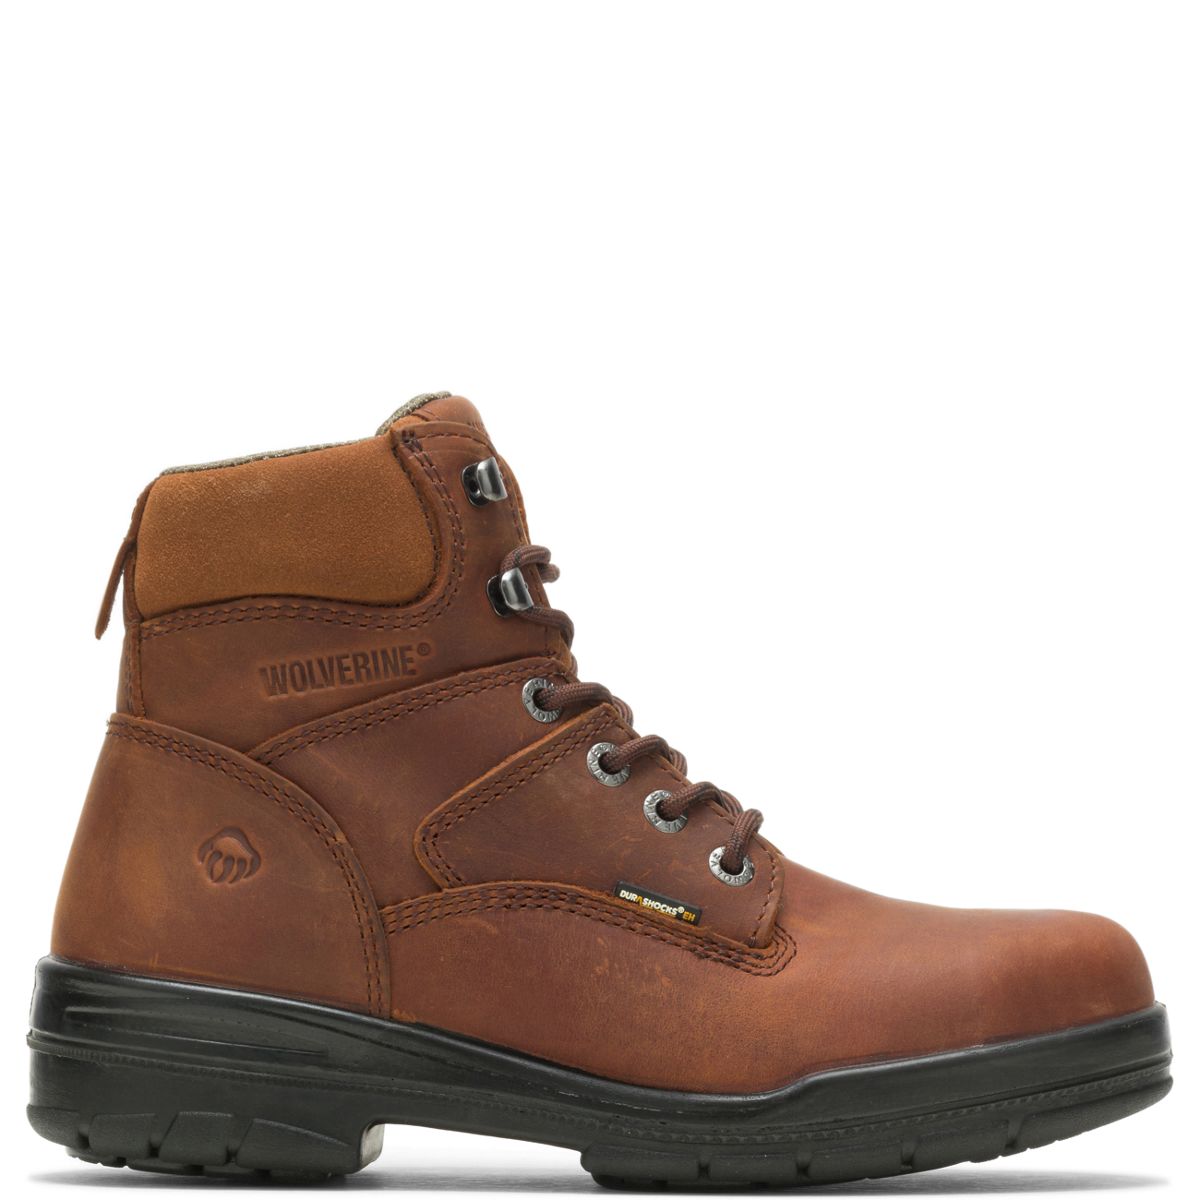 DuraShocks® Slip Resistant 6" Work Boot, Dark Brown, dynamic 1